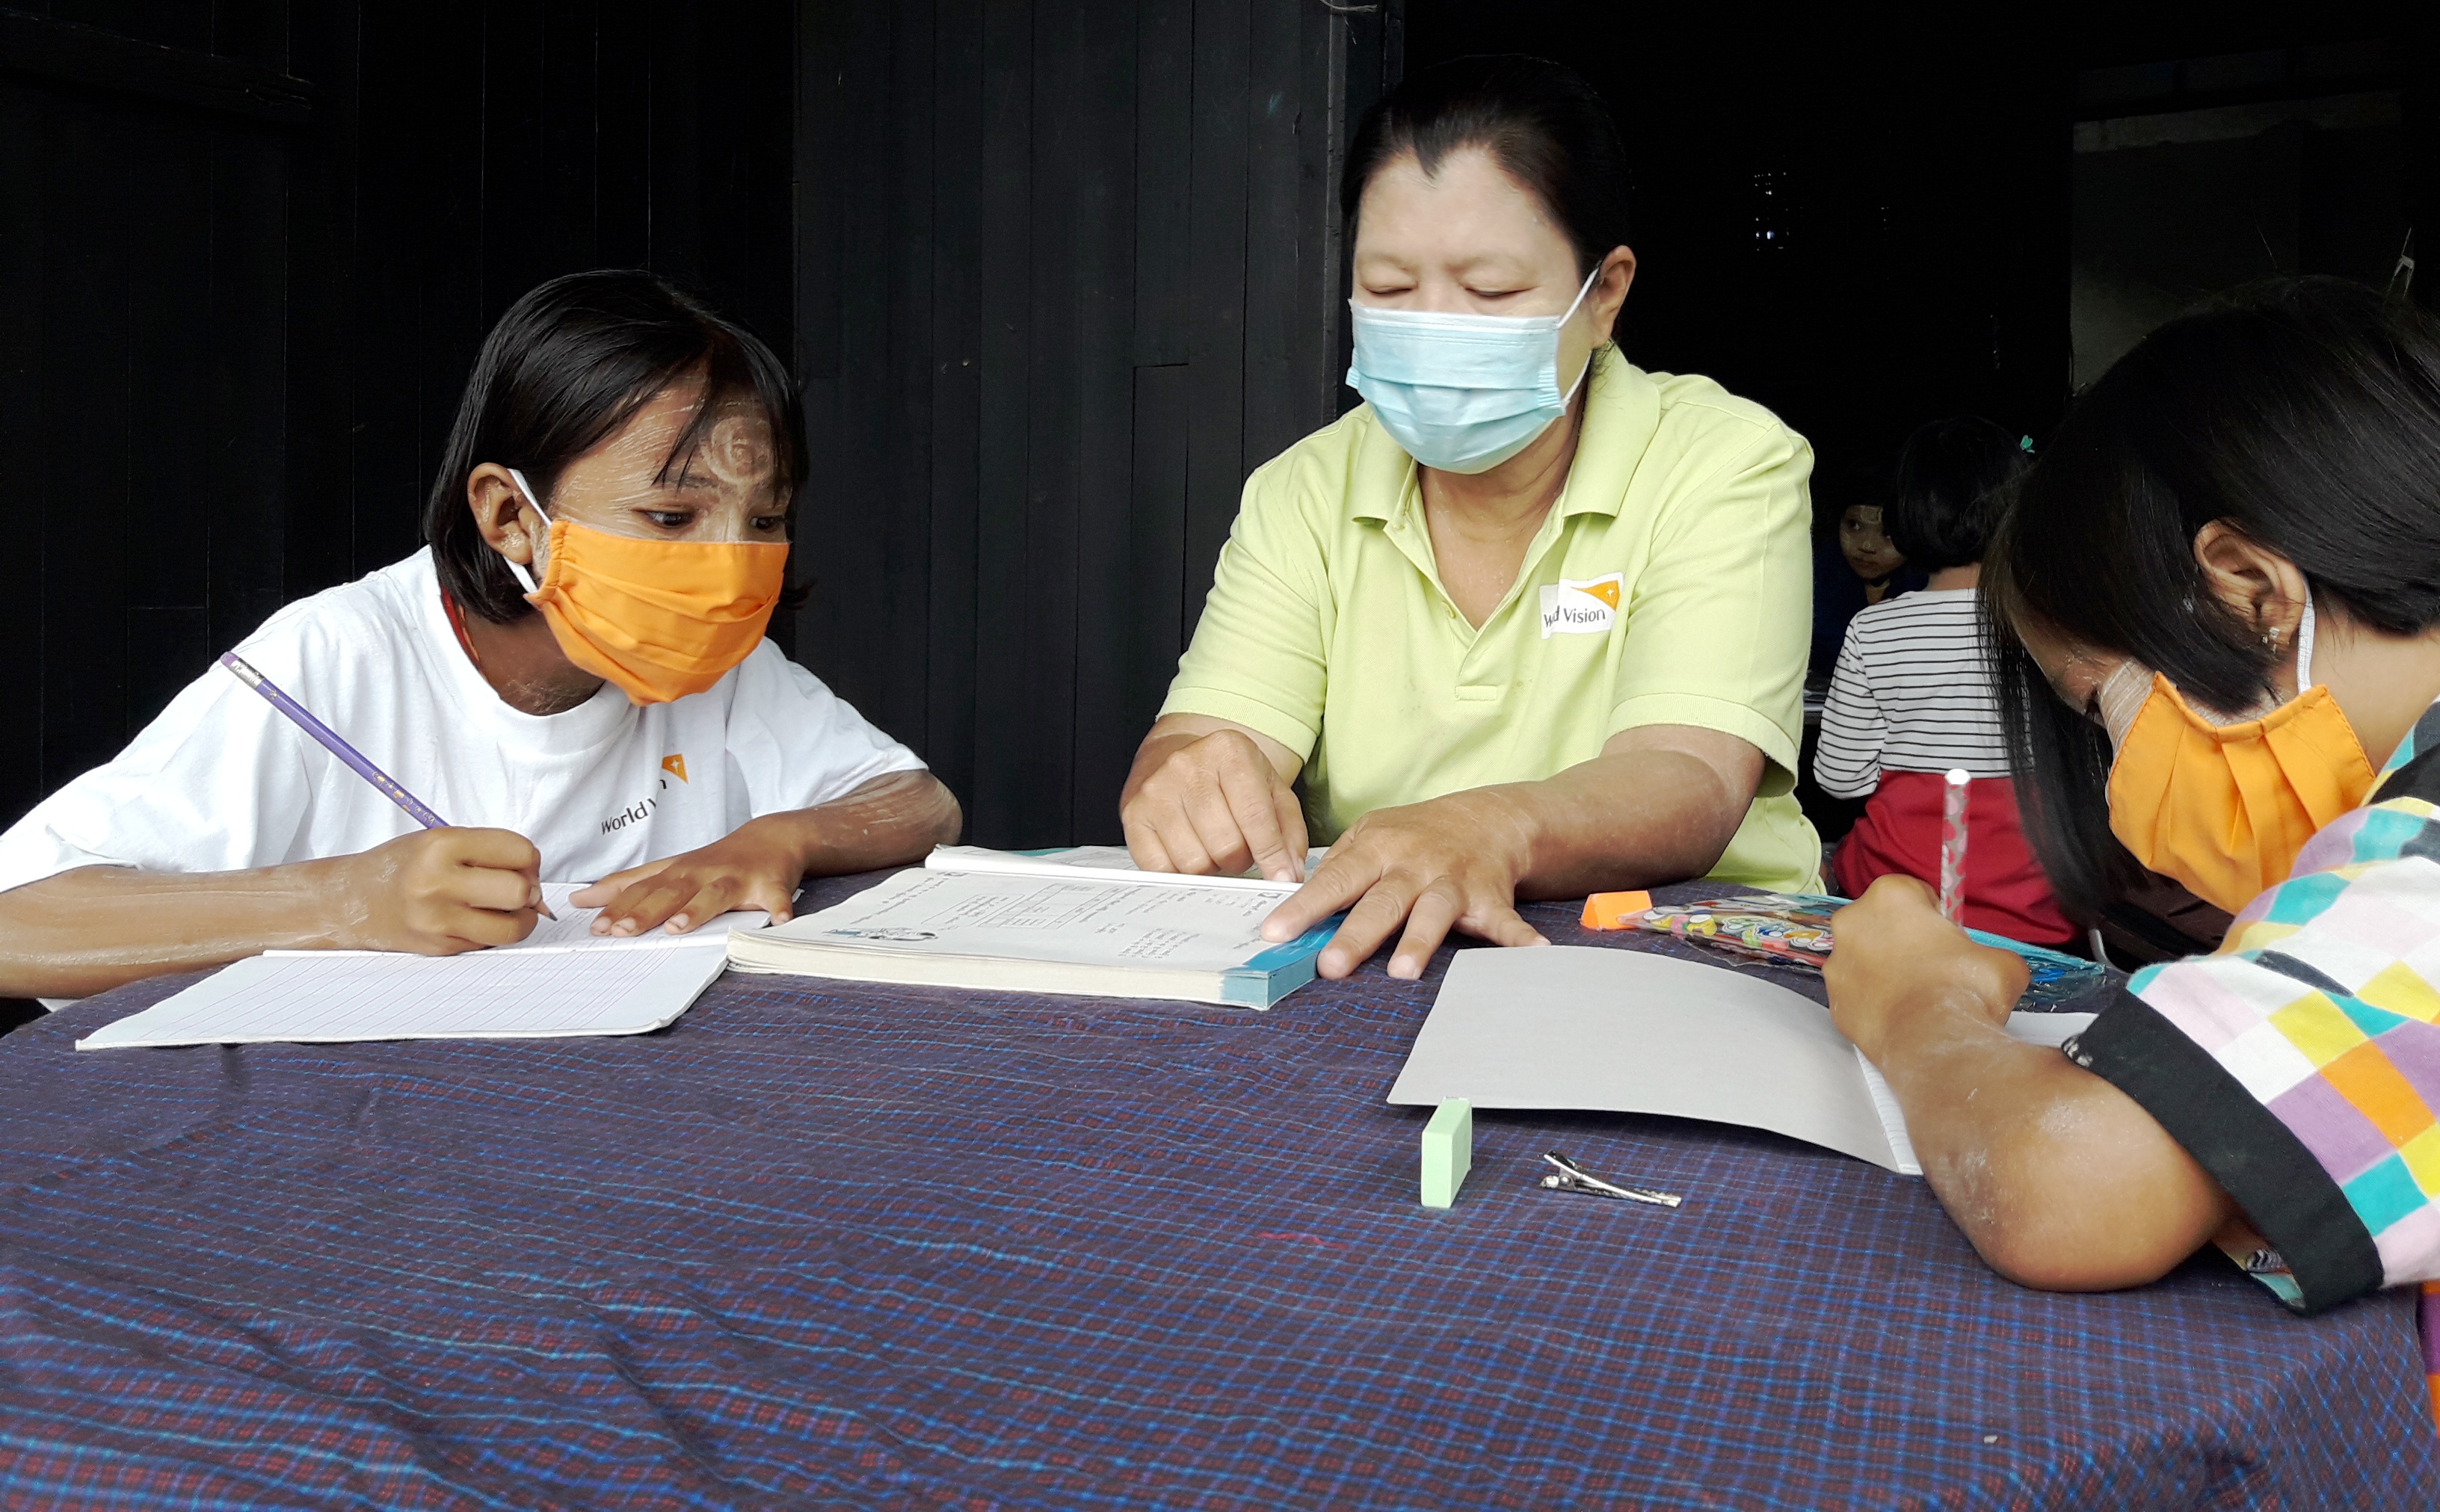 緬甸展望會陪伴因疫情停課孩子居家學習